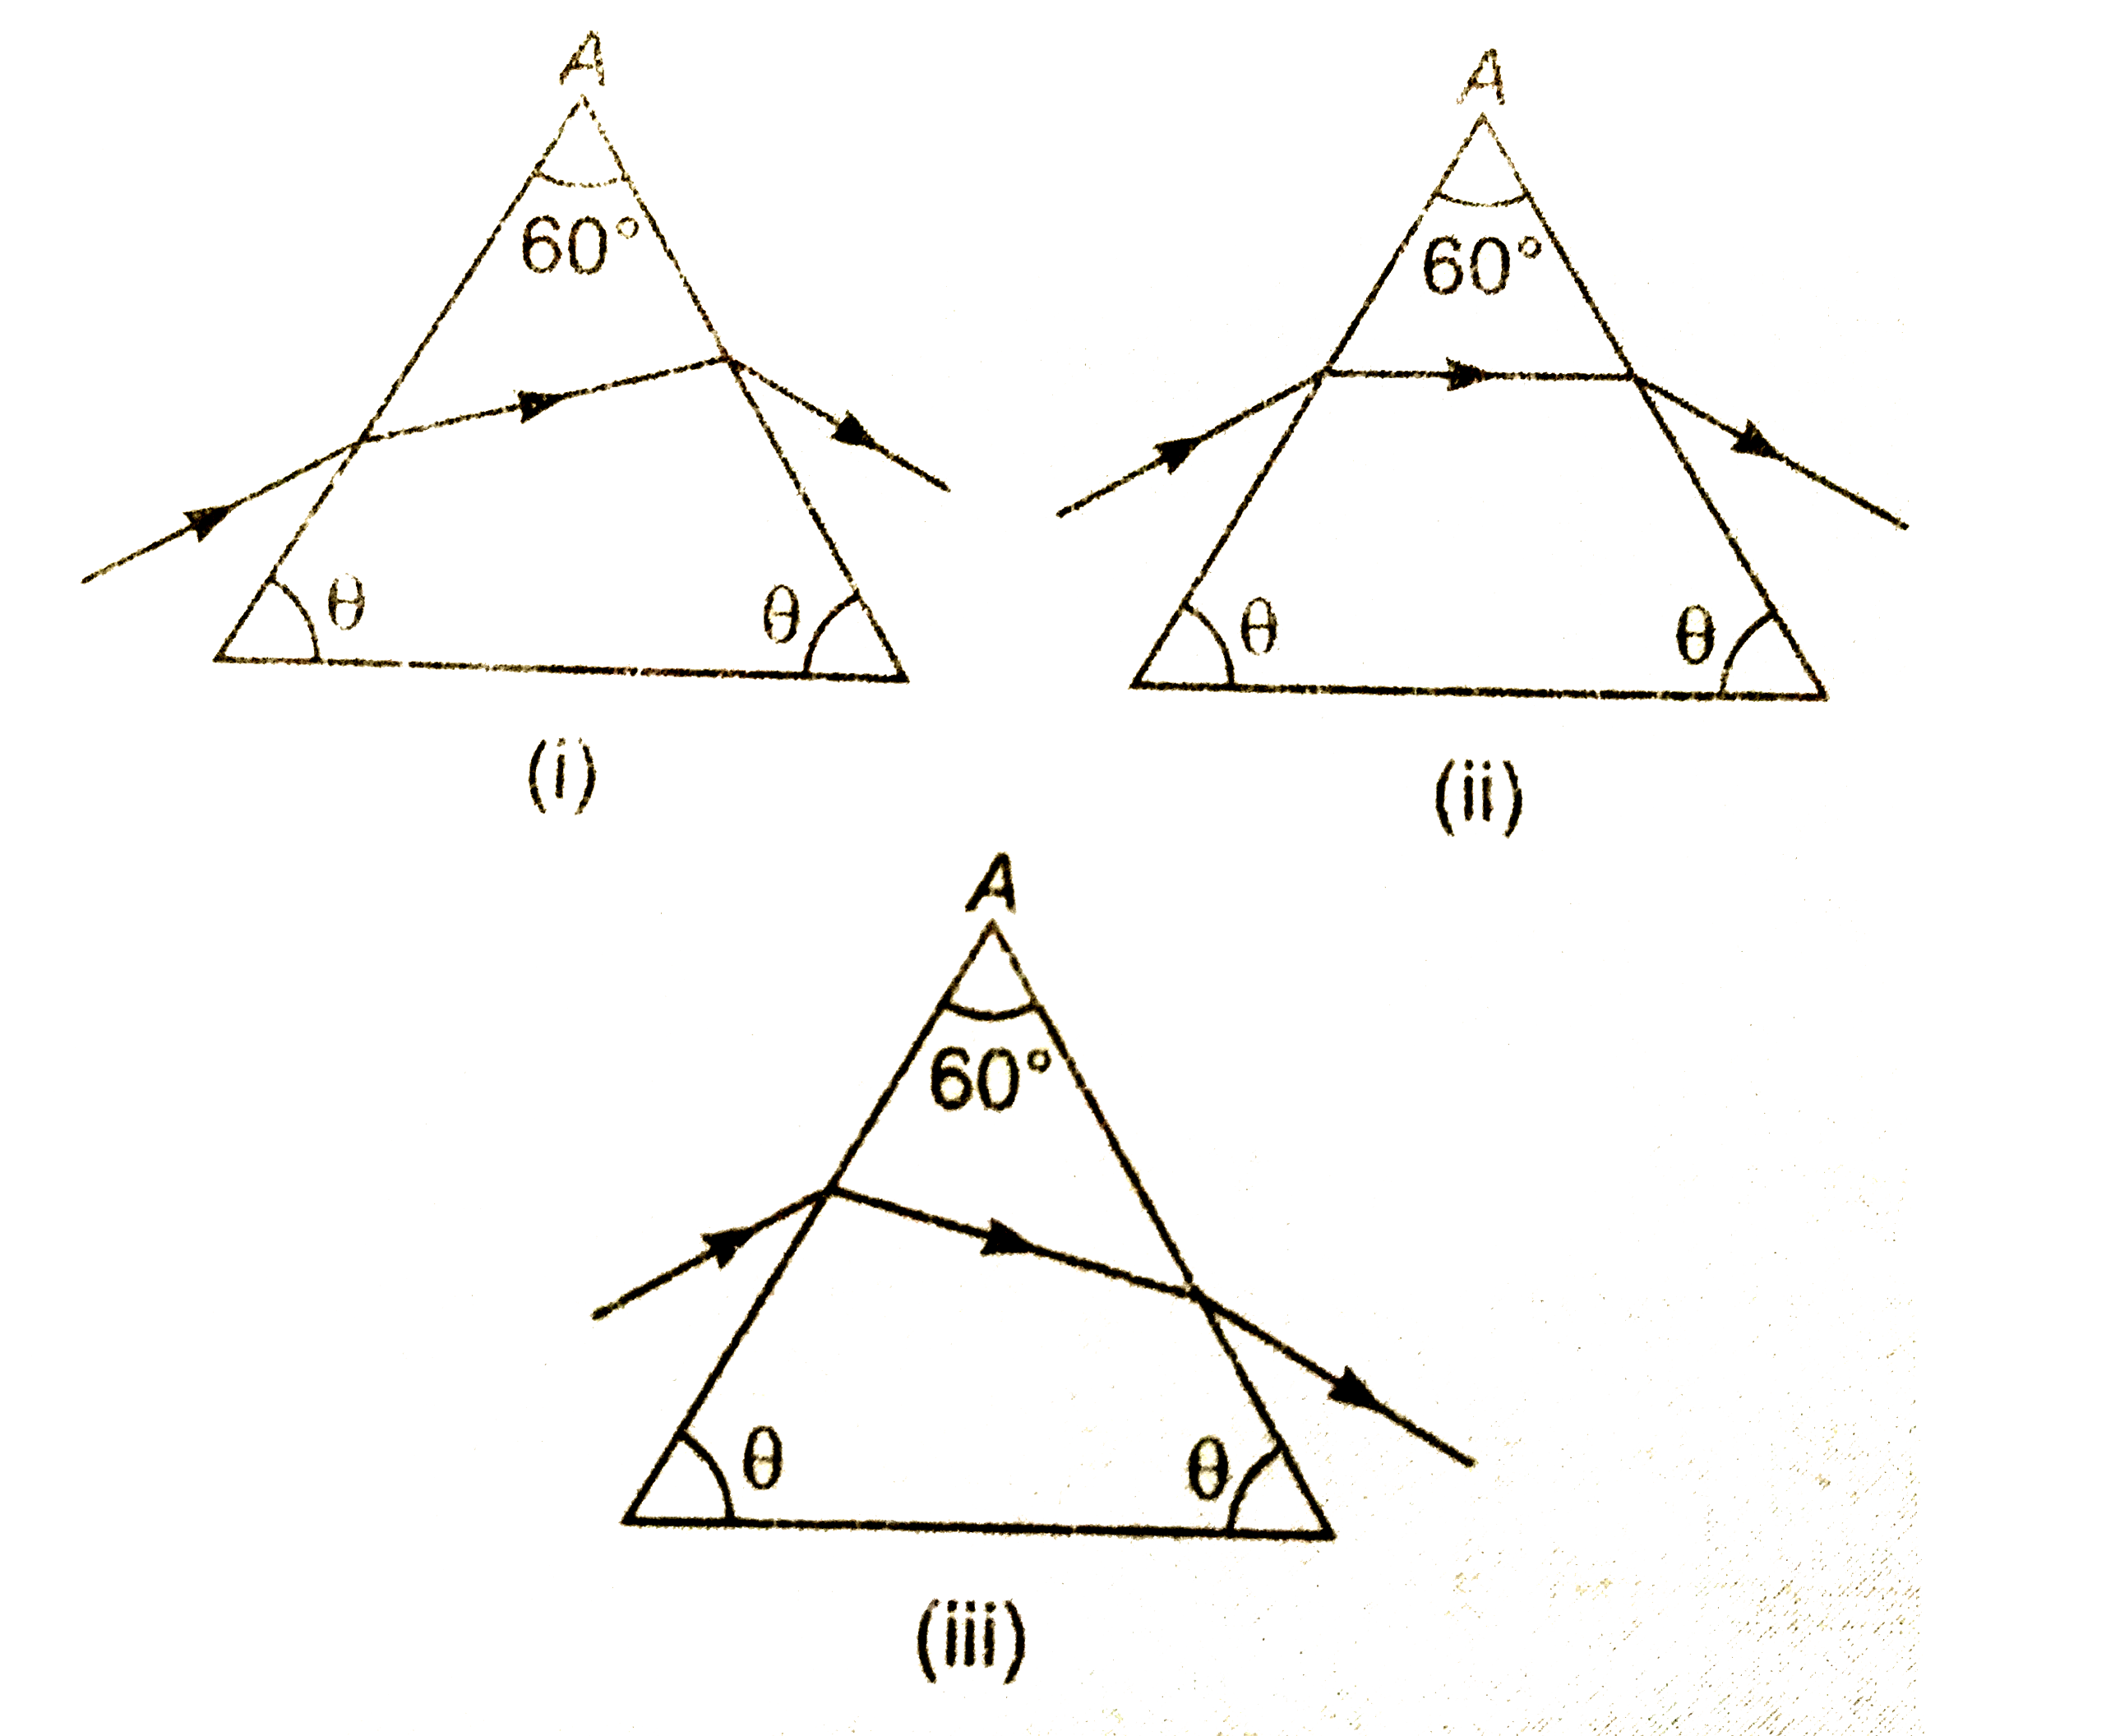 चित्र में अपवर्तक कोण A वाले प्रिज्म से गूजती प्रकाश किरण को तीन स्थितियों में दिखाया गया है। न्यूनतम विचलन की स्थिति है-